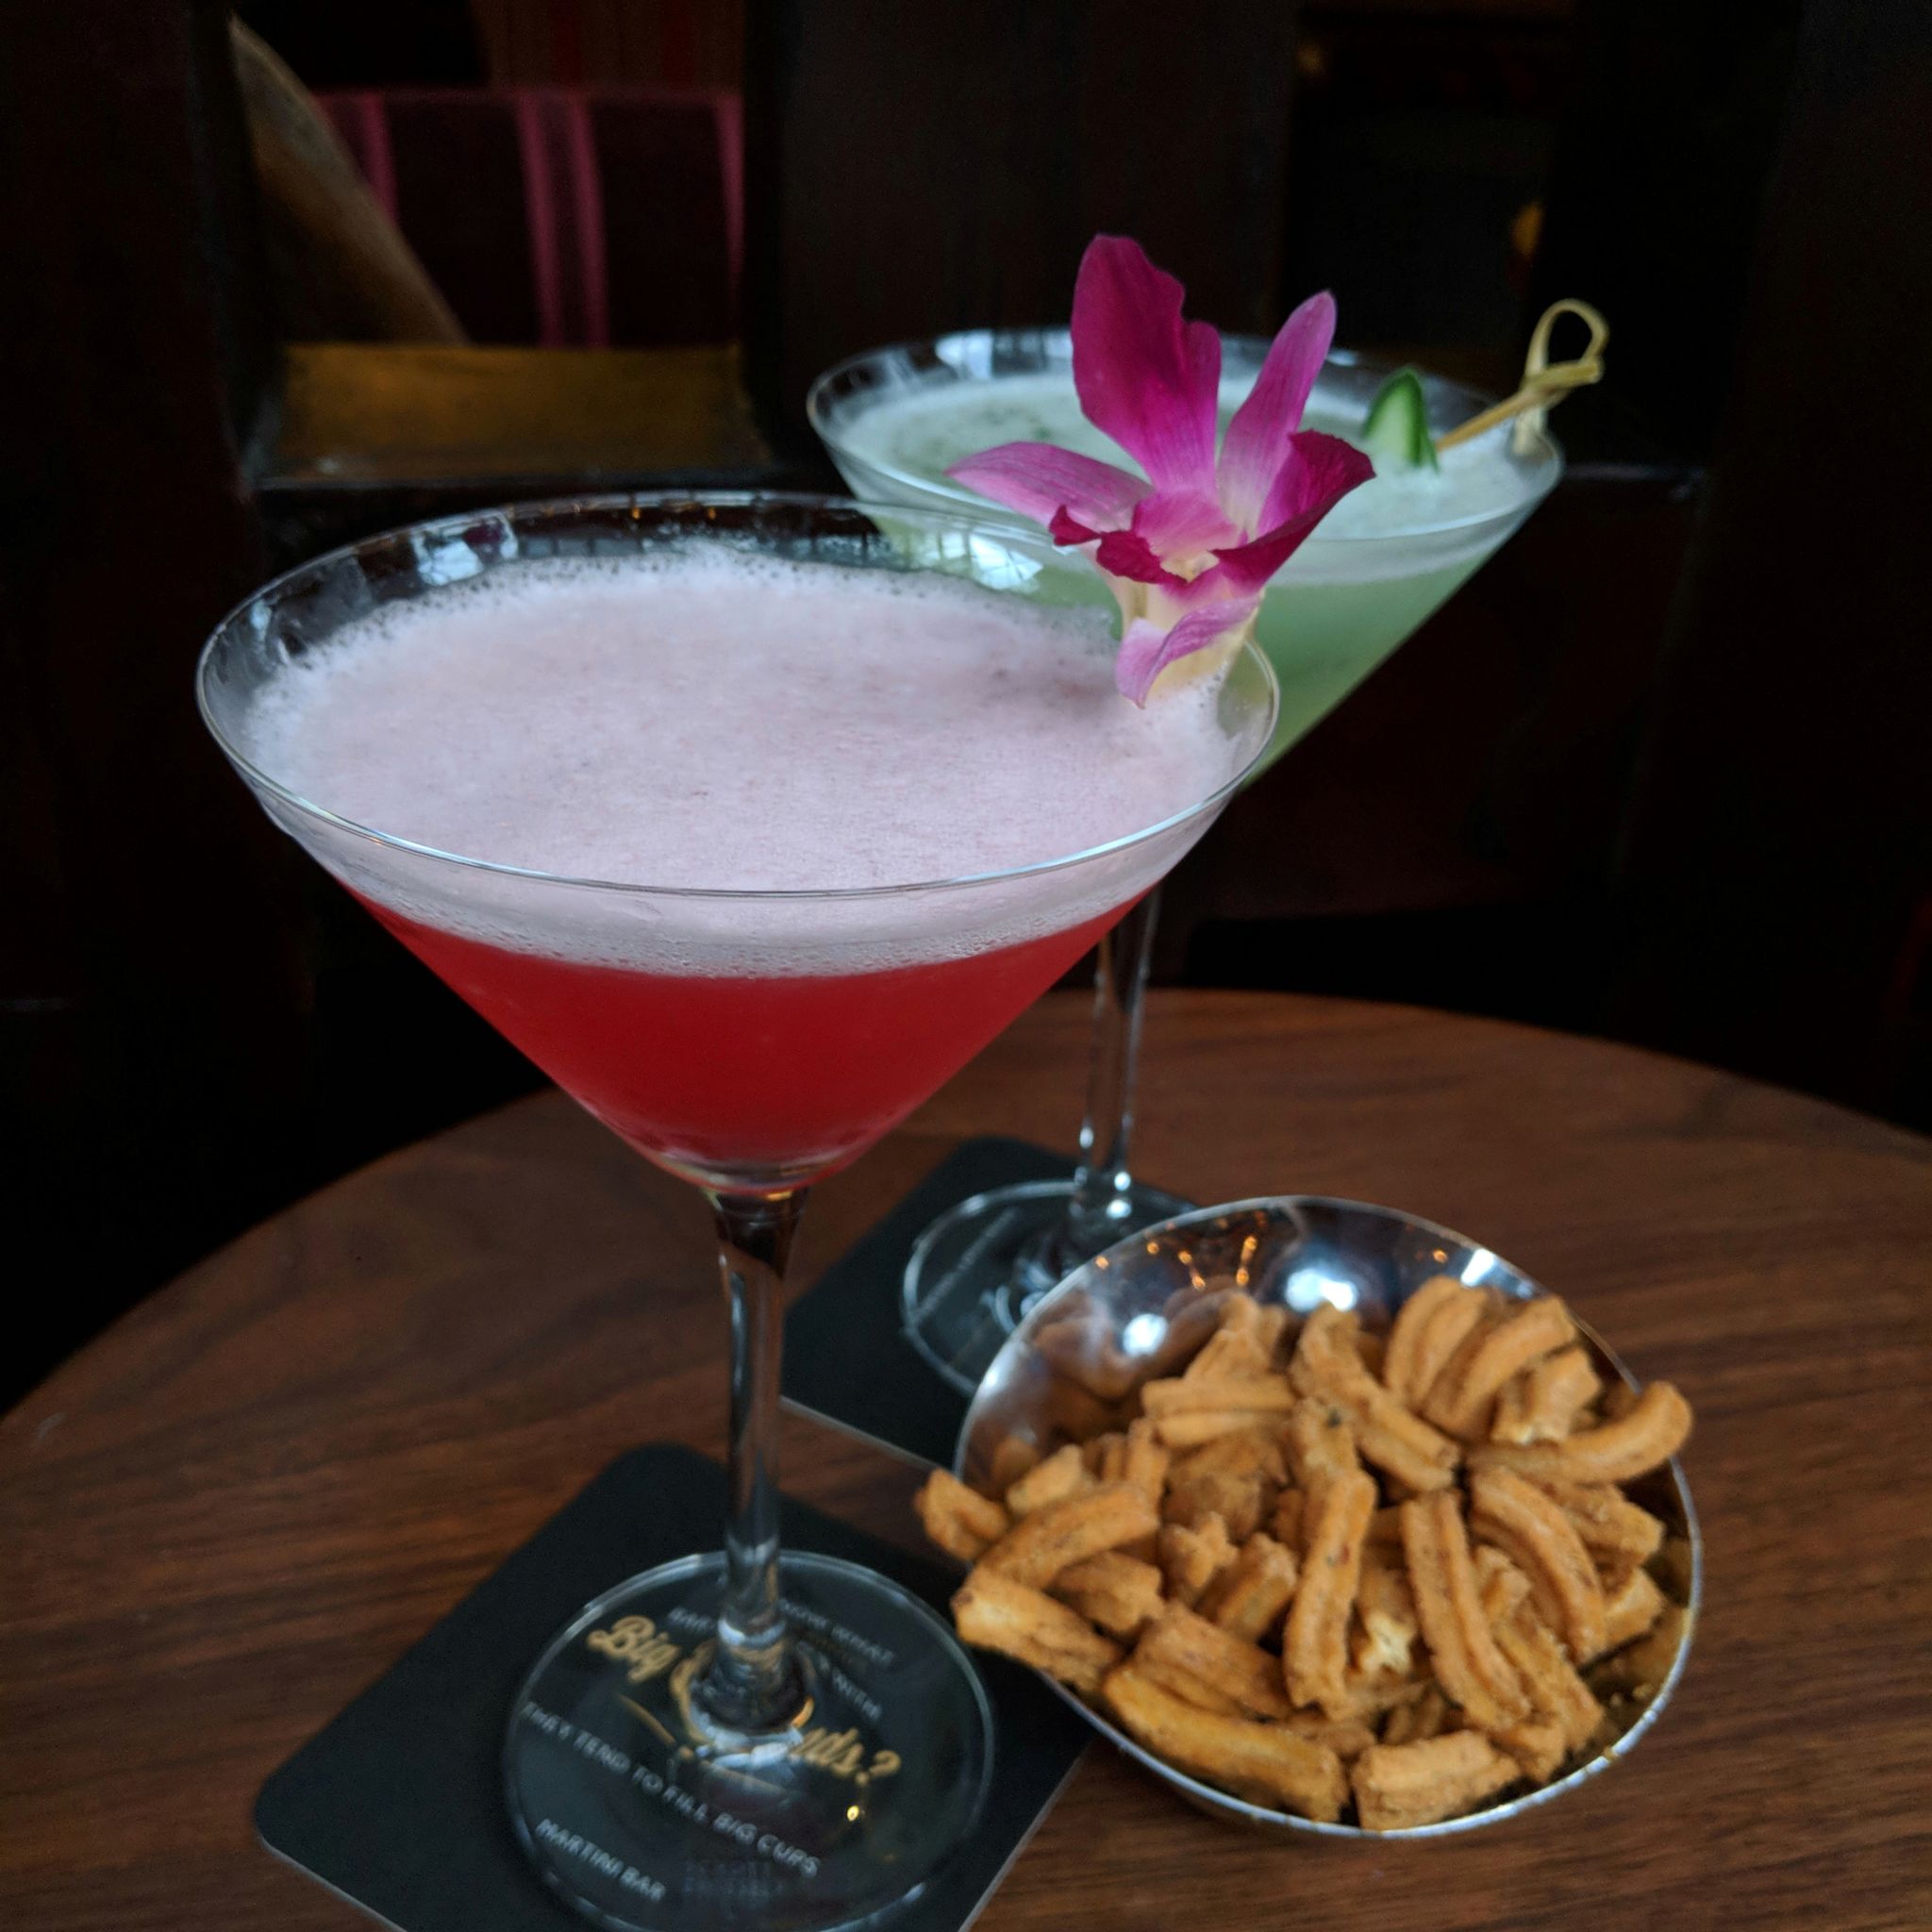 grand hyatt singapore martini bar happy hour